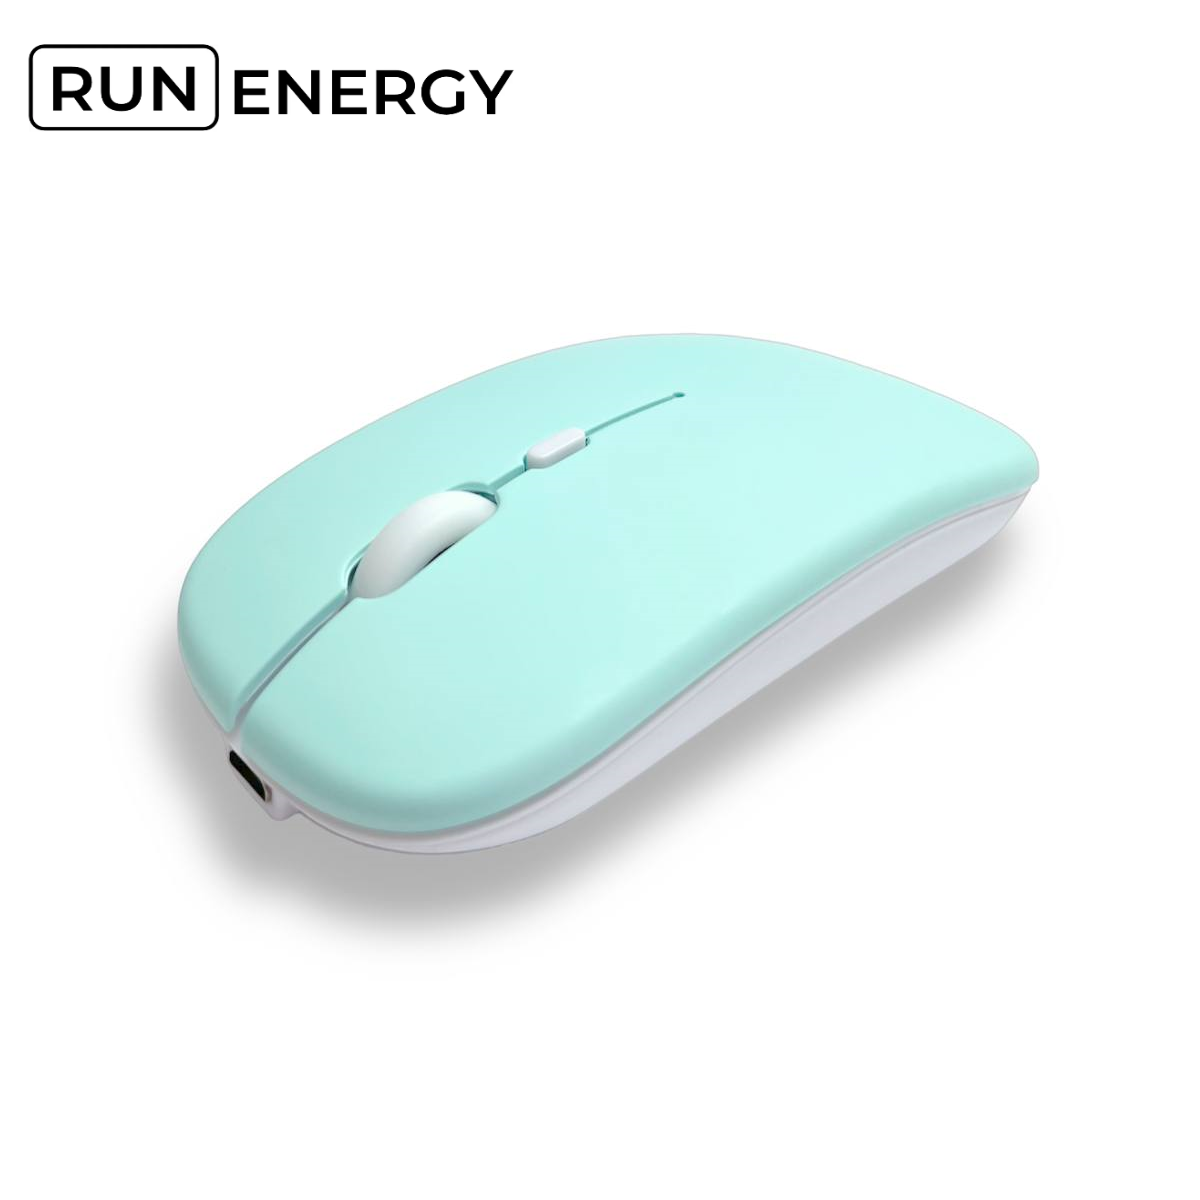 Мышь Run Energy беспроводная бесшумная (светло-зеленая)